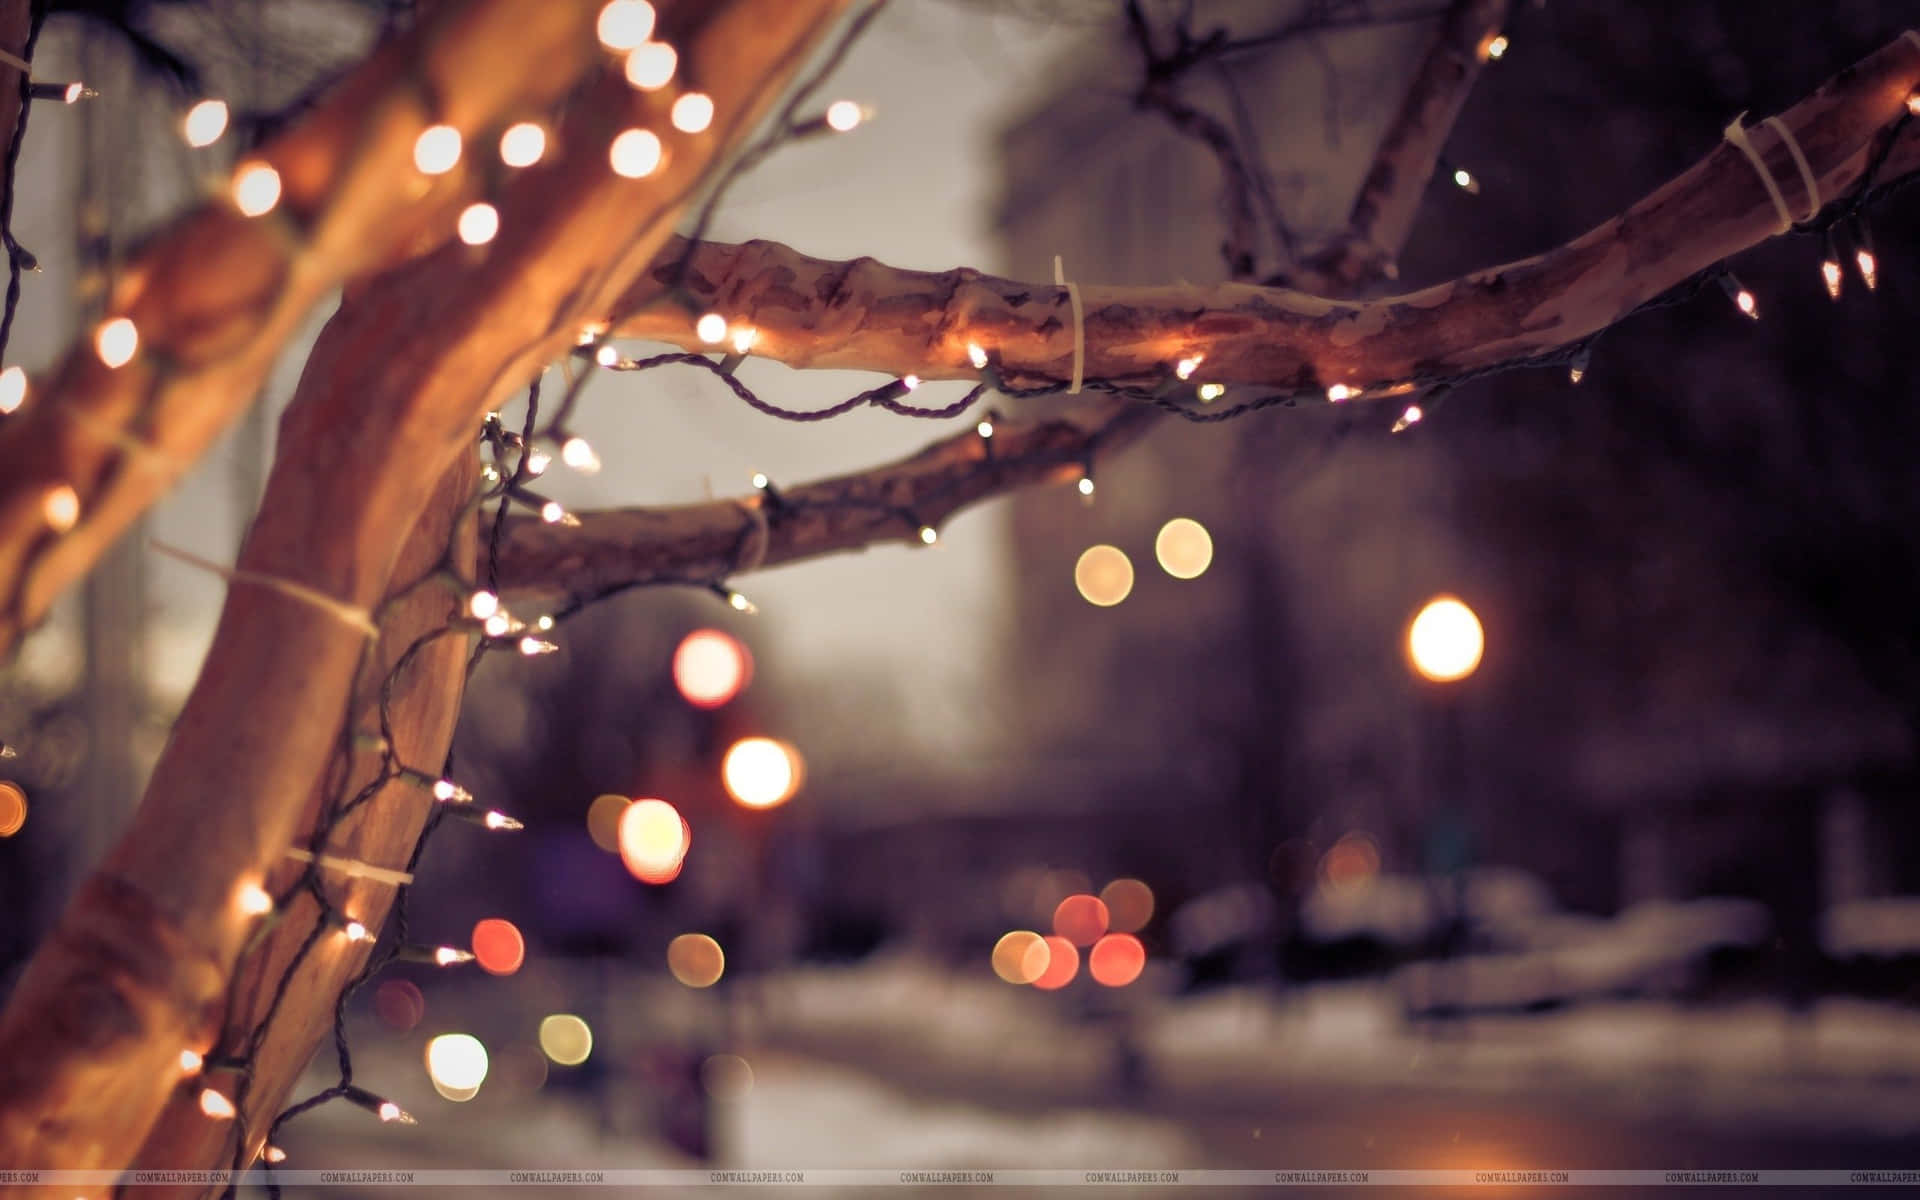 Opliv dit hjem i denne ferie sæson med disse glade juletræs-tapeter. Wallpaper